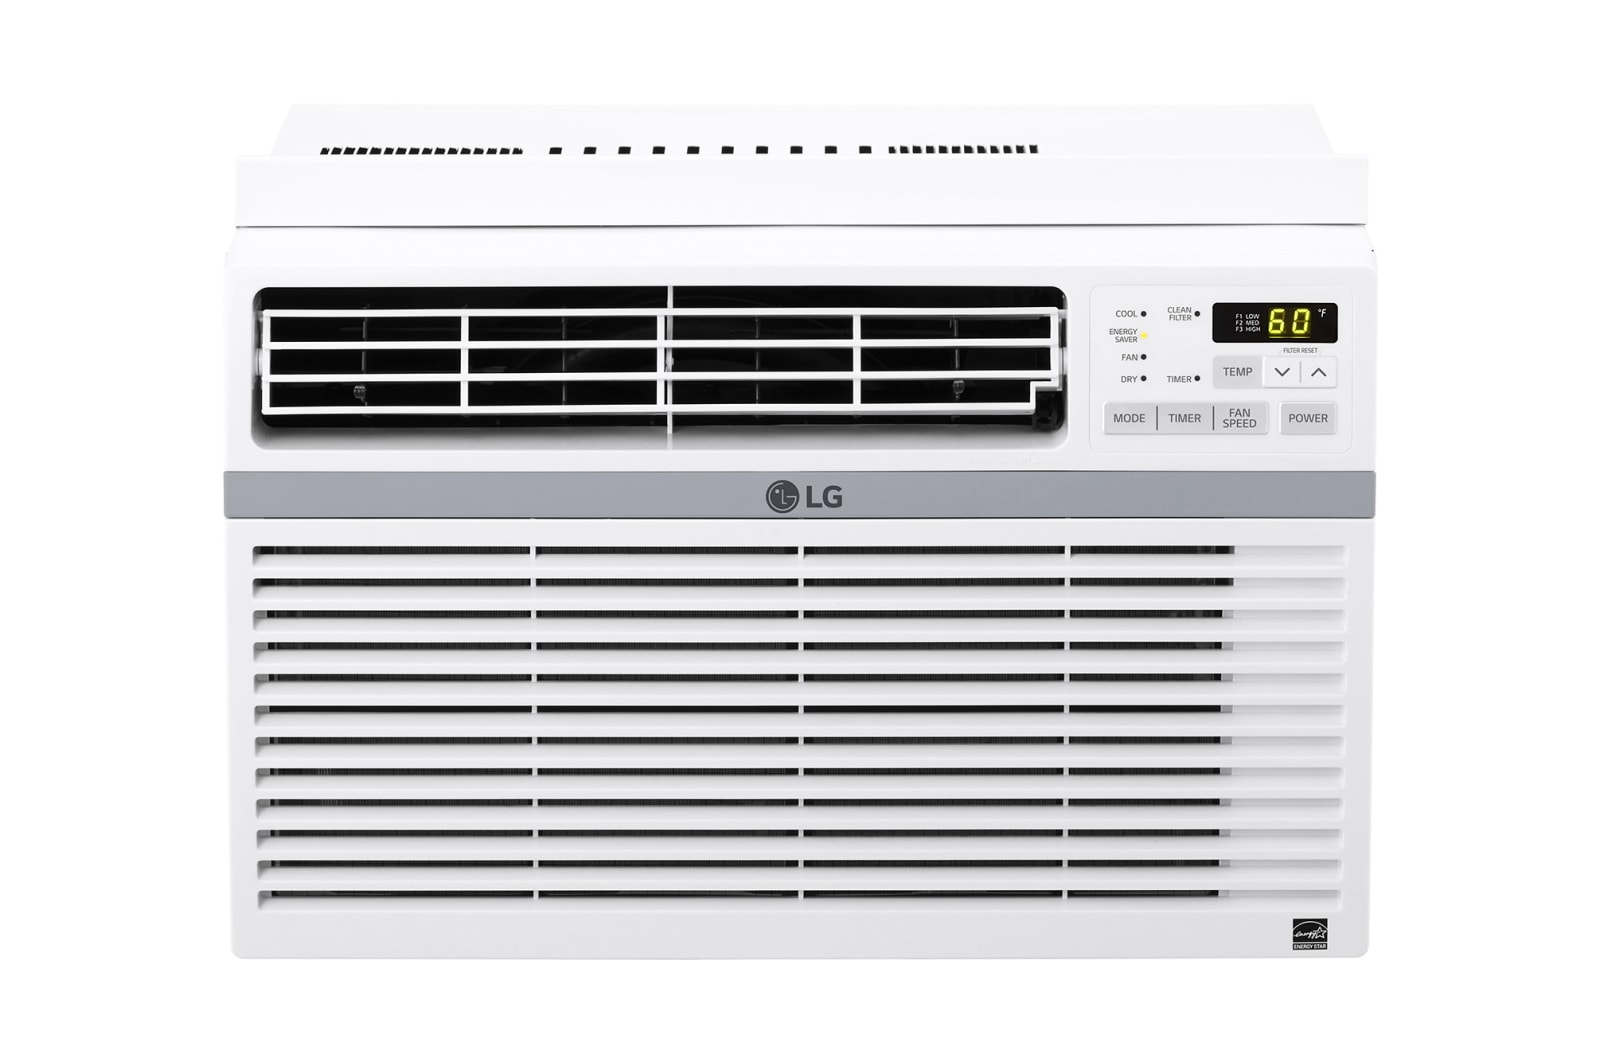 LG W081CE ventana y aire acondicionado de pared 8000 BTU/h Blanco Window air conditioner